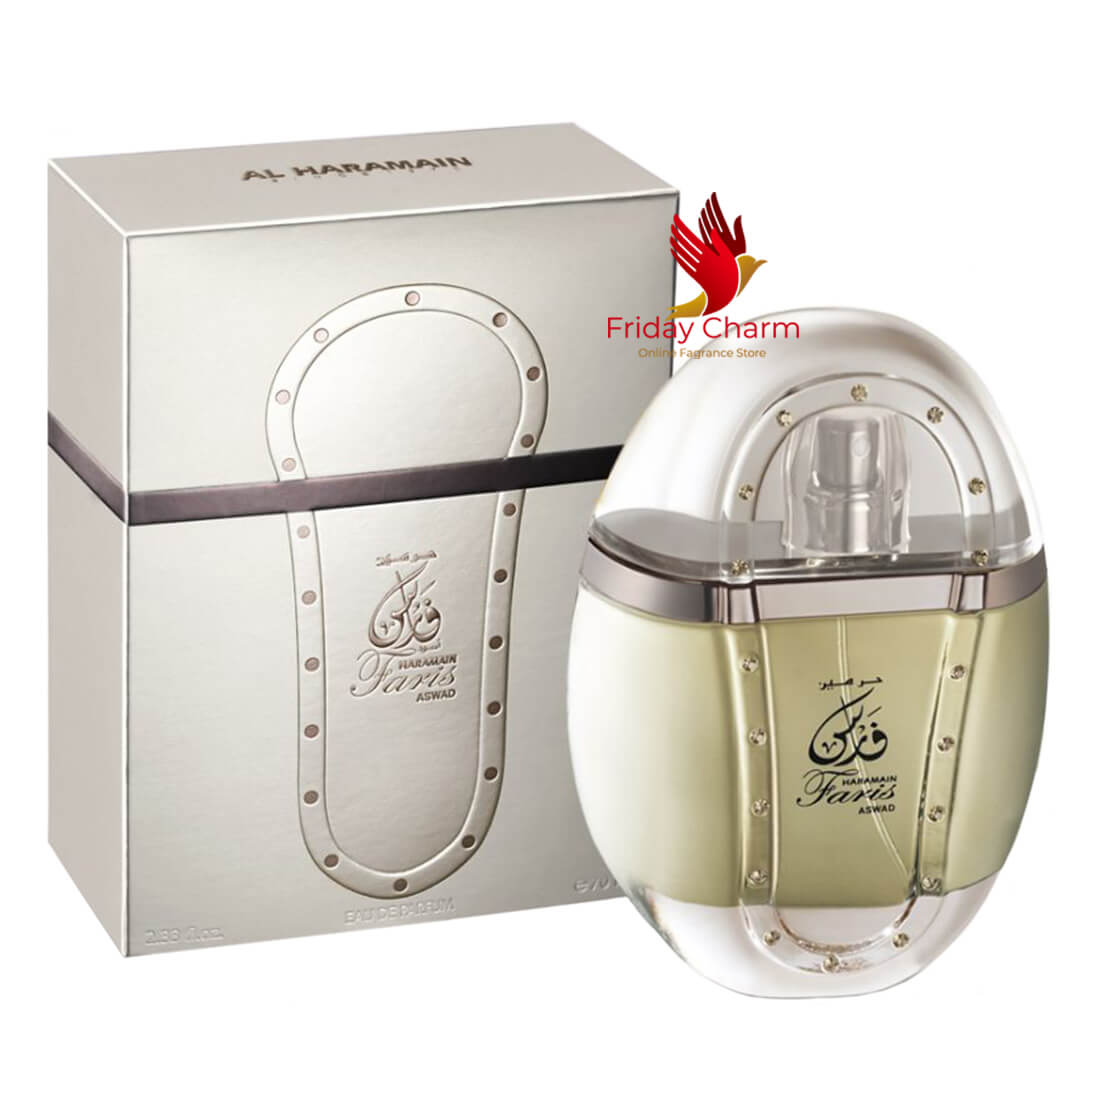 Al Haramain Faris Aswad Perfume Spray - 70ml